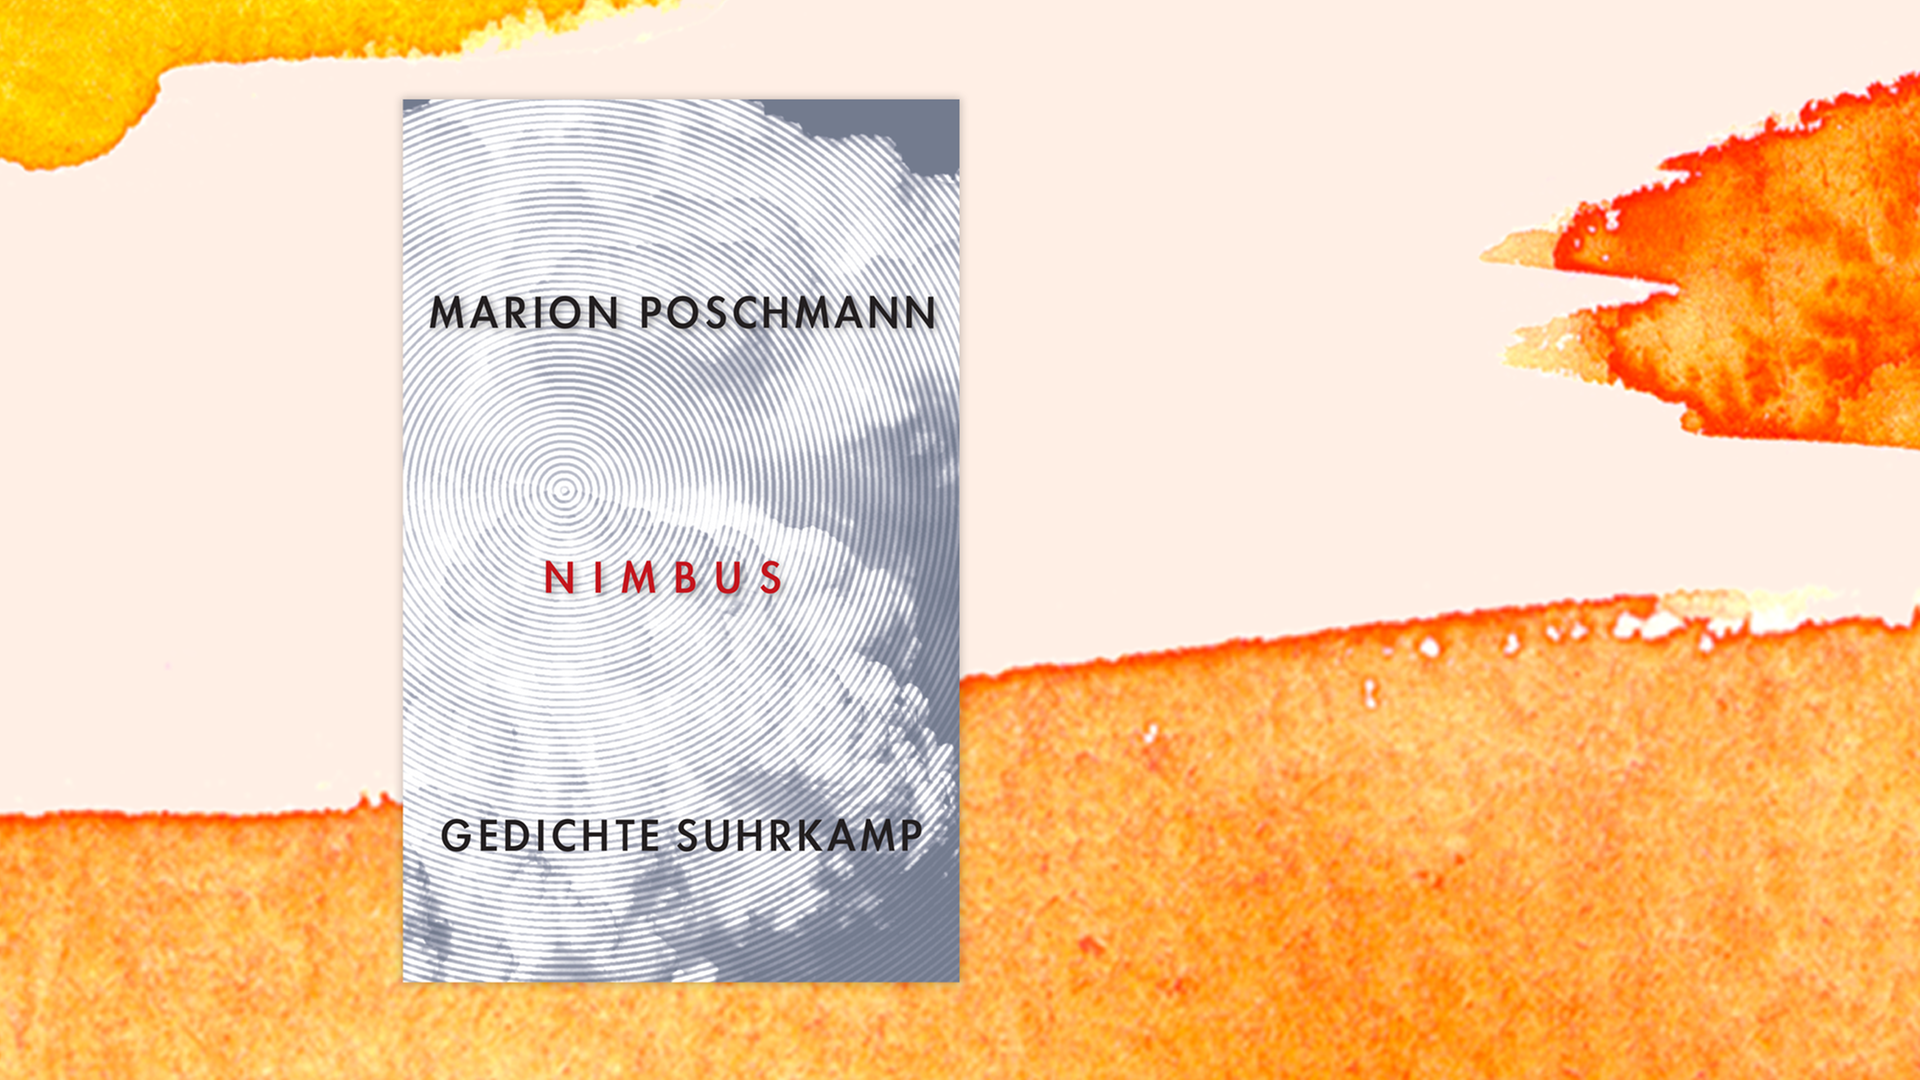 Zu sehen ist das Cover des Gedichtbands "Nimbus" von Marion Poschmann.